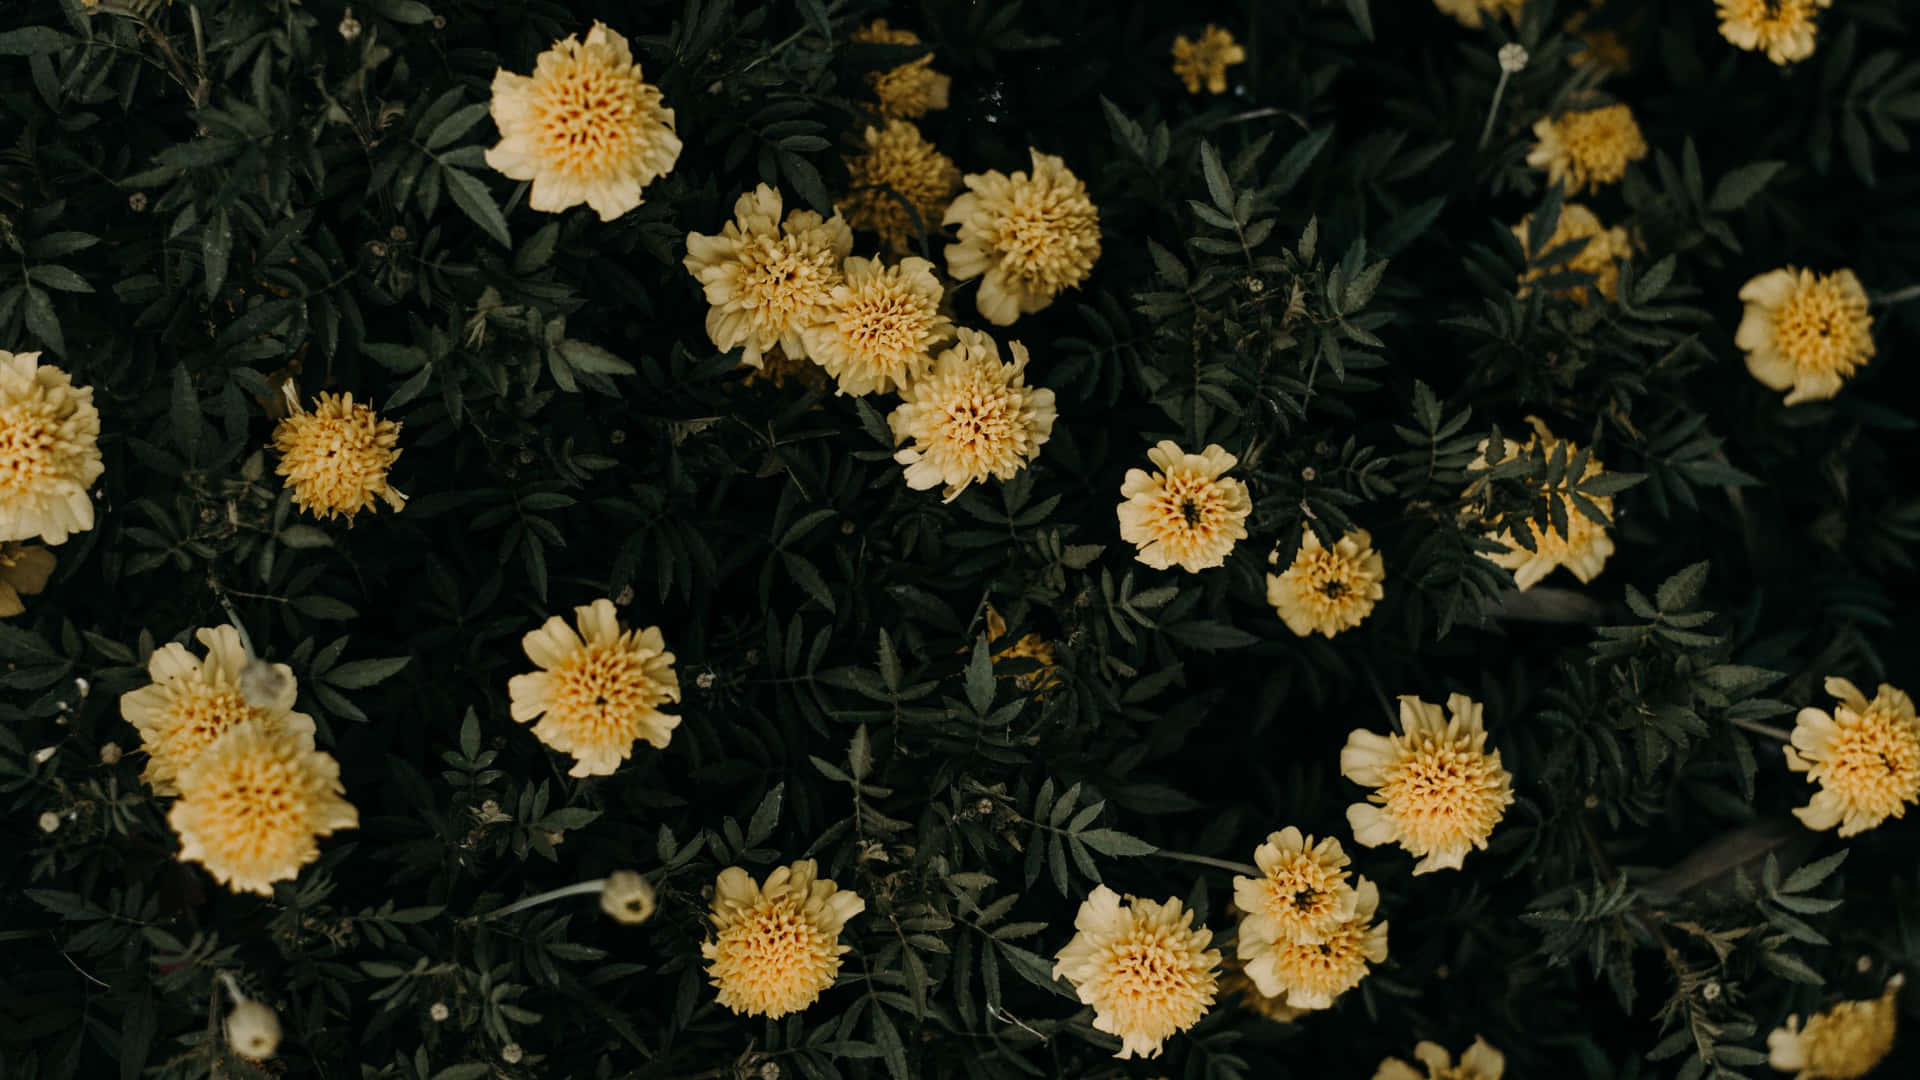 Muốn tìm kiếm bức hình nền desktop hoa thẩm mỹ màu vàng đẹp và tươi sáng? Hãy tải xuống ngay bức hình nền desktop hoa thẩm mỹ màu vàng của chúng tôi! Với một loạt các loài hoa và thành phần đẹp mắt, bức hình nền này sẽ tạo nên một không gian làm việc tuyệt vời, giúp bạn tinh thần sảng khoái và cảm thấy yên tâm. Hãy trải nghiệm ngay bây giờ!